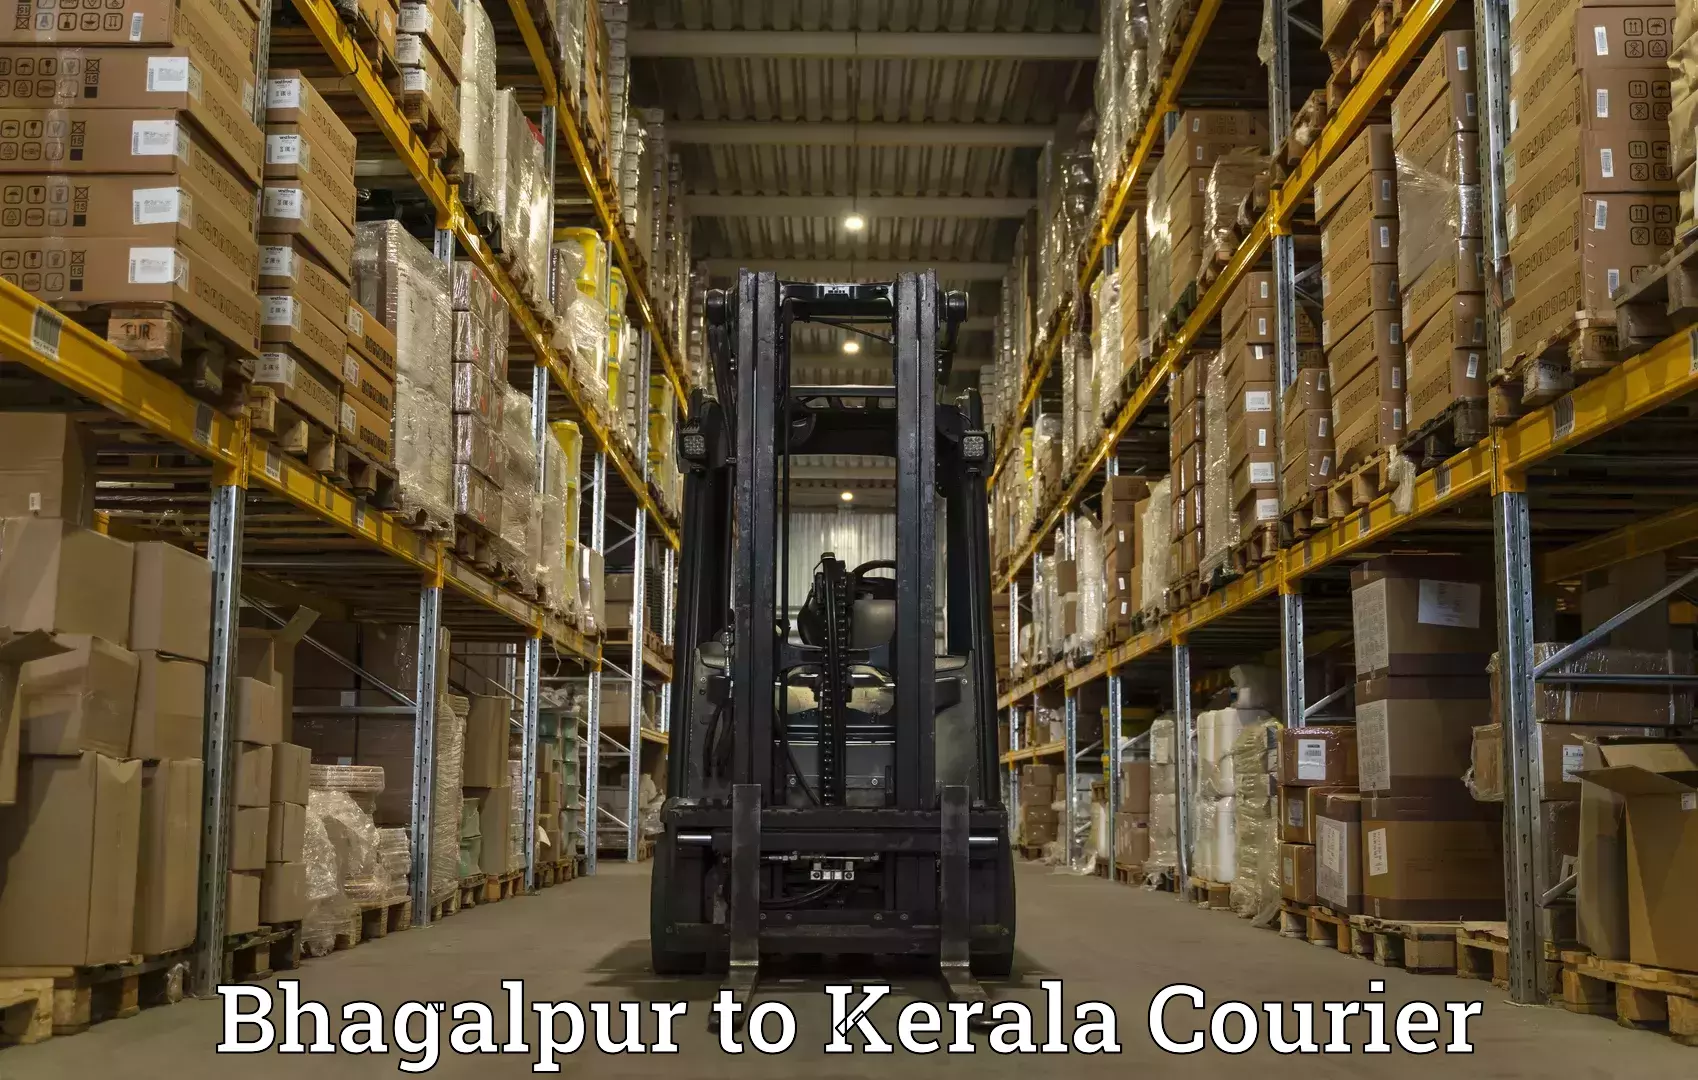 Efficient courier operations Bhagalpur to Thiruvananthapuram